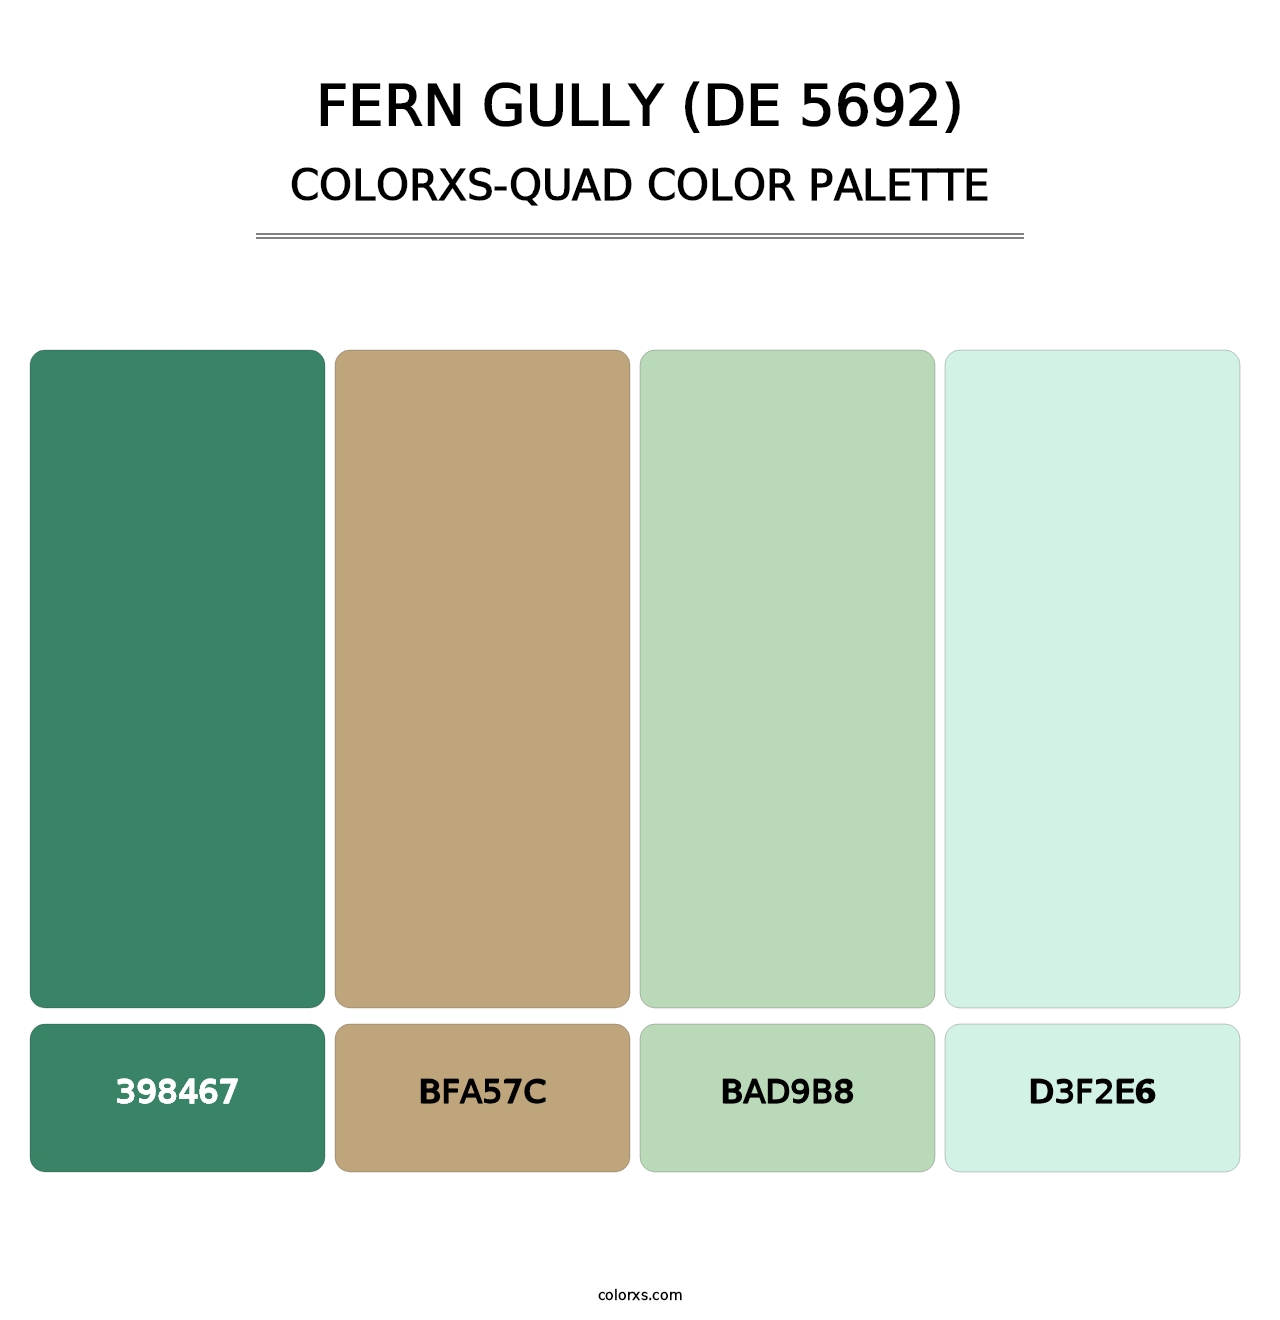 Fern Gully (DE 5692) - Colorxs Quad Palette